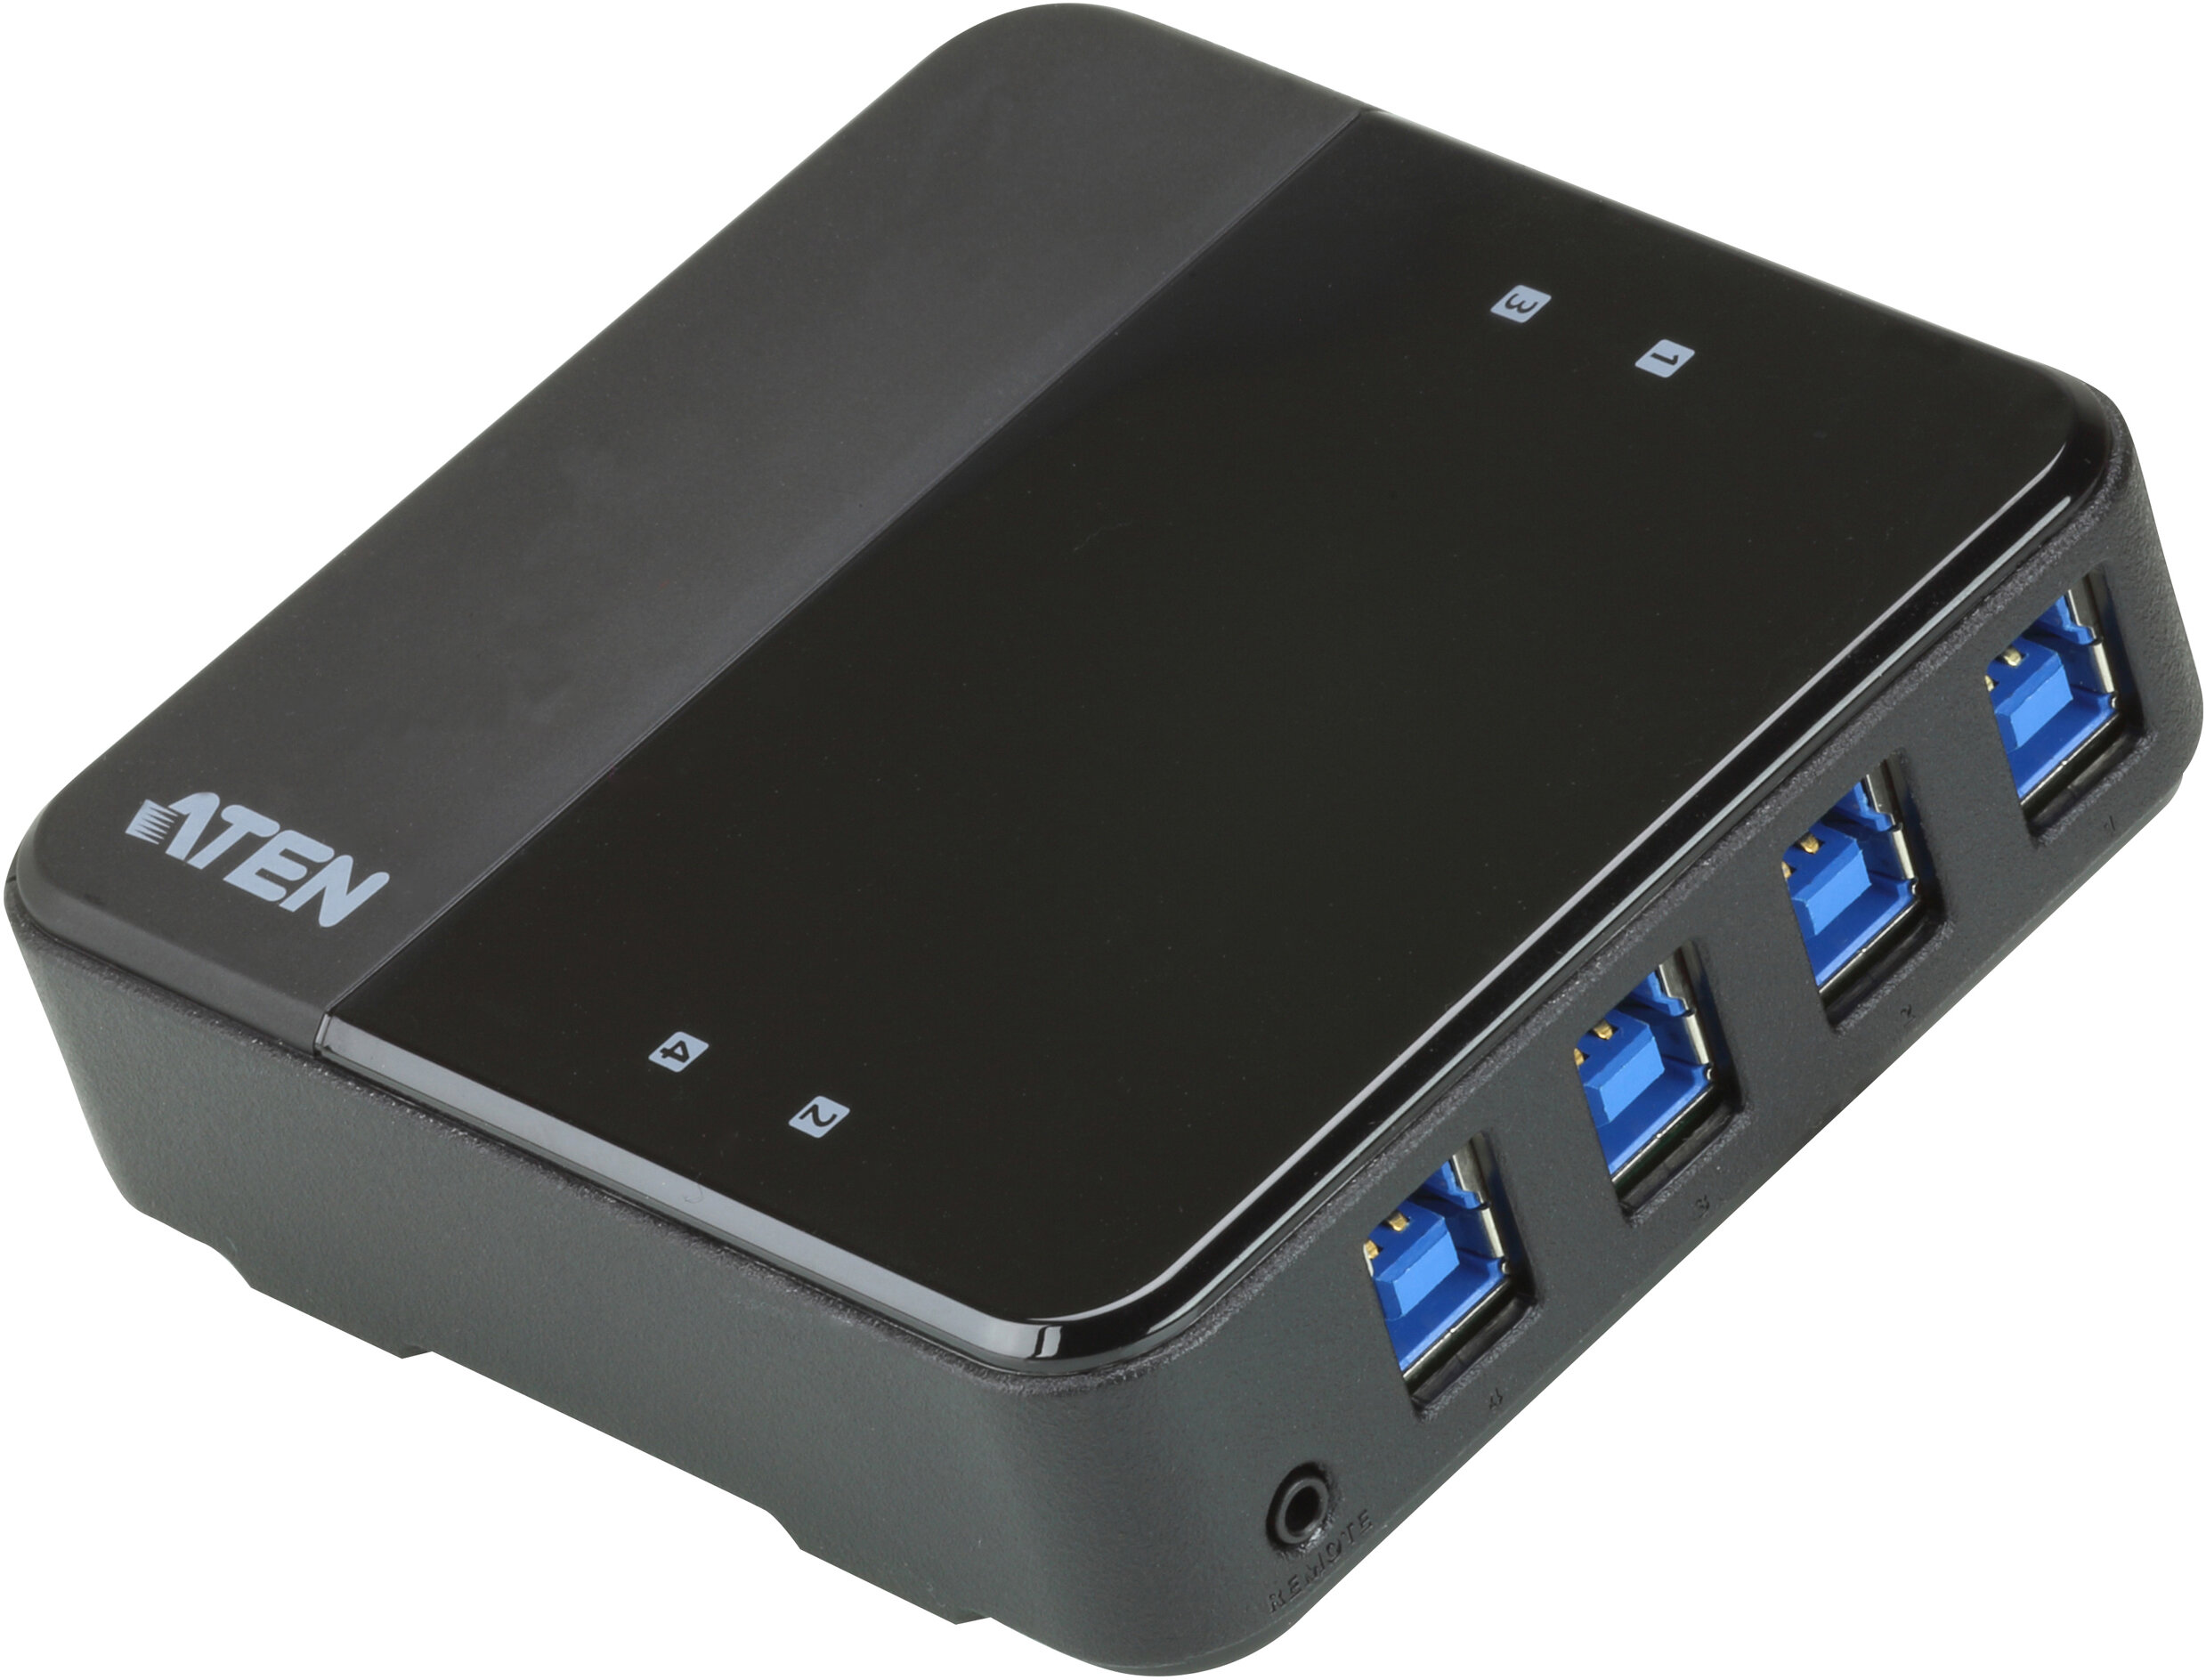 Переключатель Aten US434-AT USB 4 ПК> 4 устройства 4 USB B-тип > 4 USB A-тип Male > Female со шнурами A-B 2х1.2м.+2х1.8м. для подкл. к уп